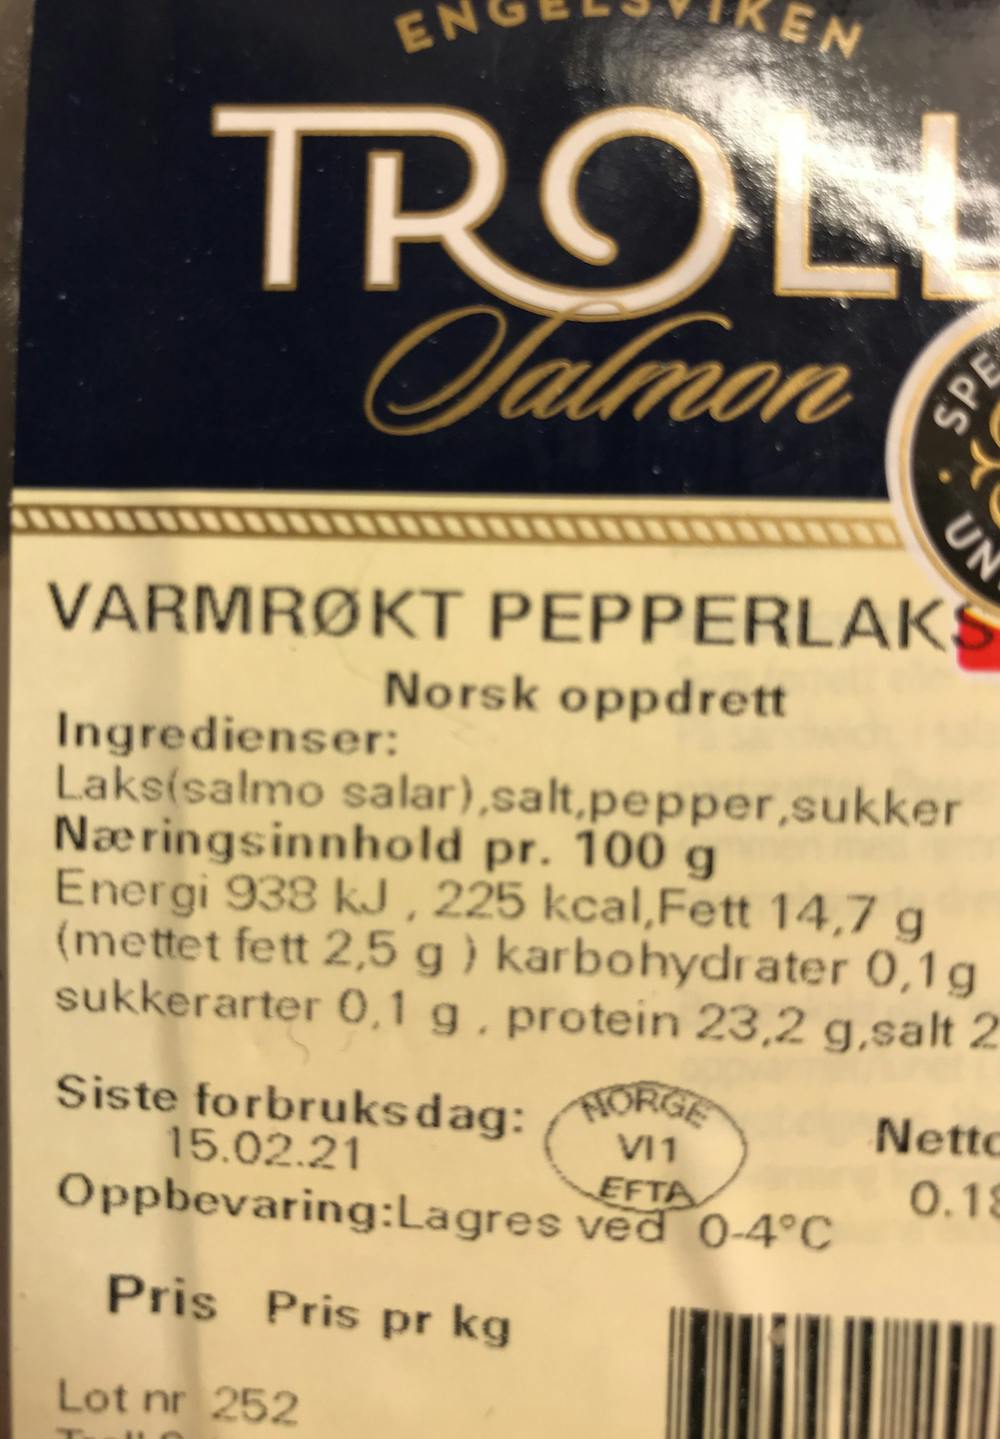 Ingredienslisten til Troll Varmrøkt pepperlaks